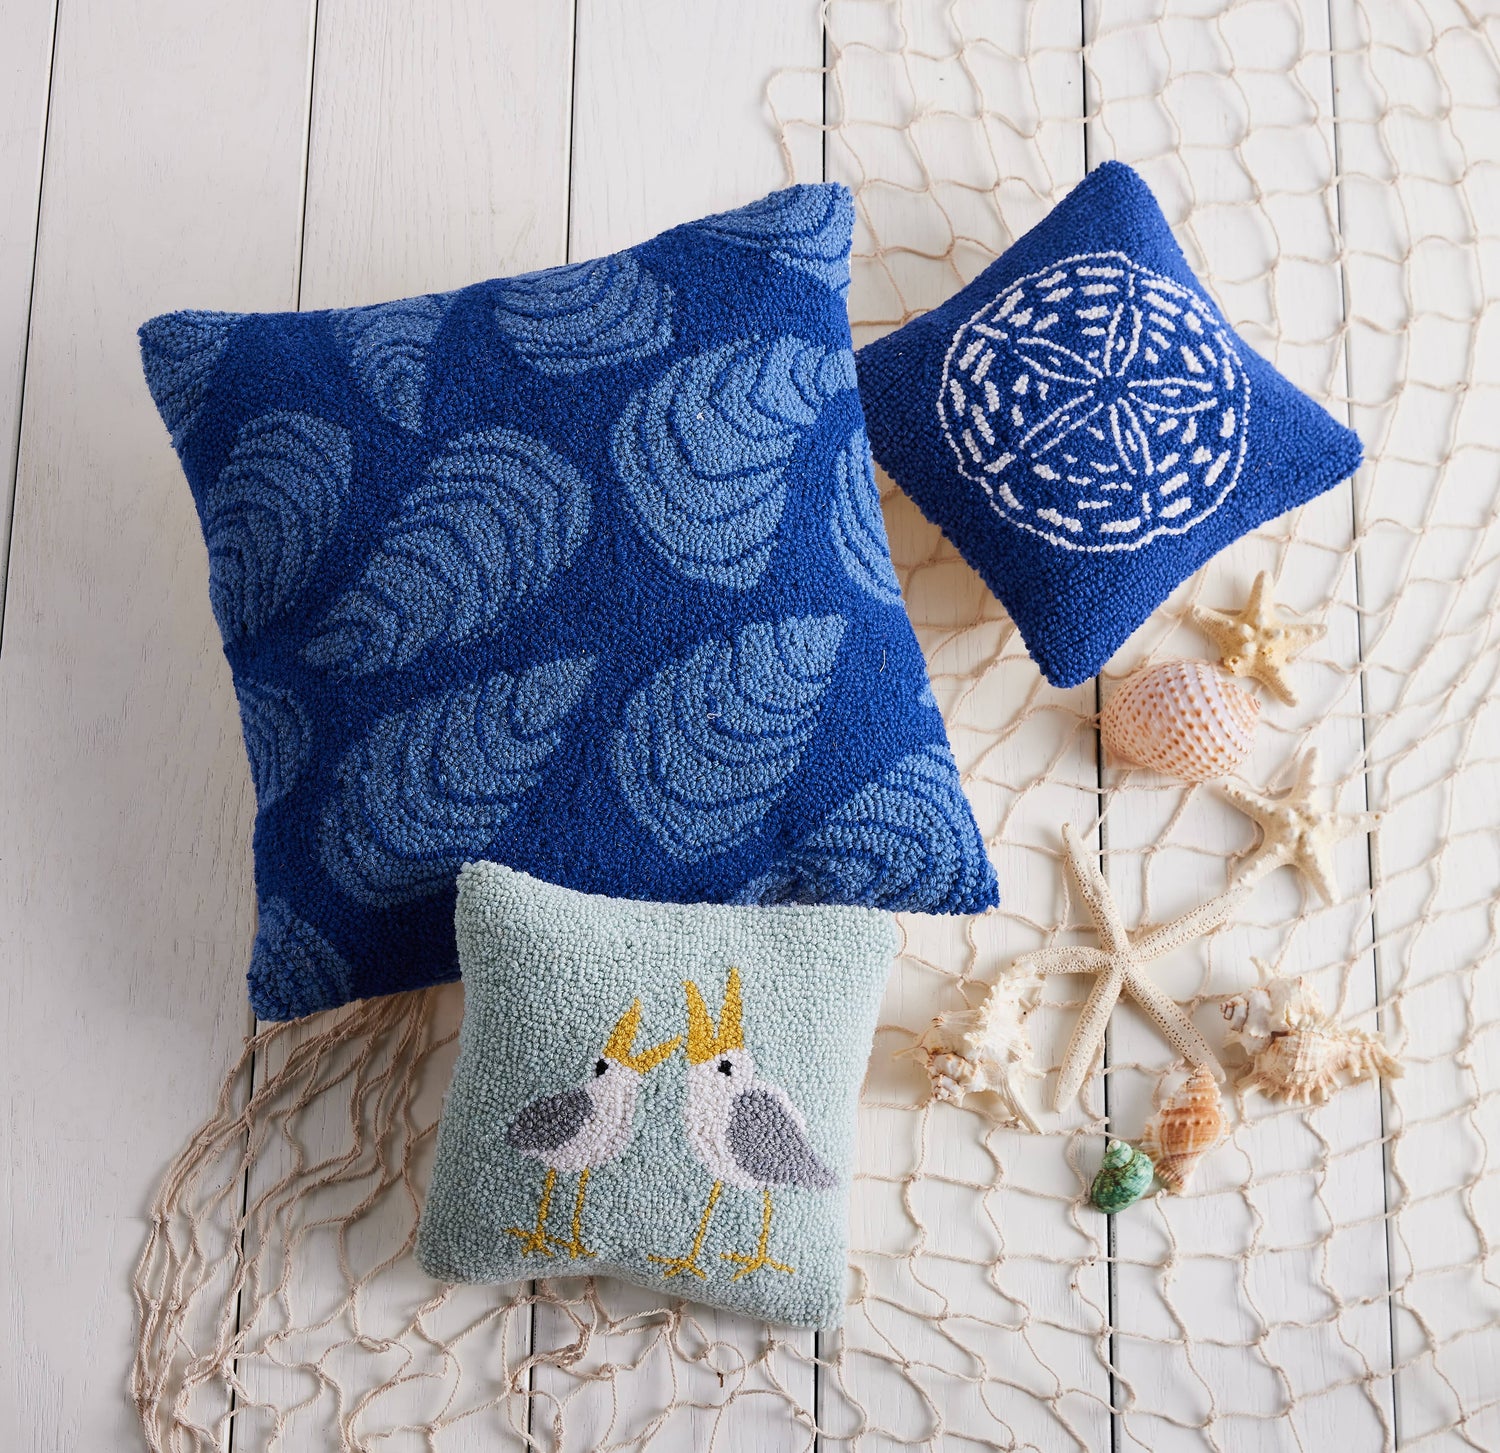 Peking Handicraft - Seagulls Hook Pillow